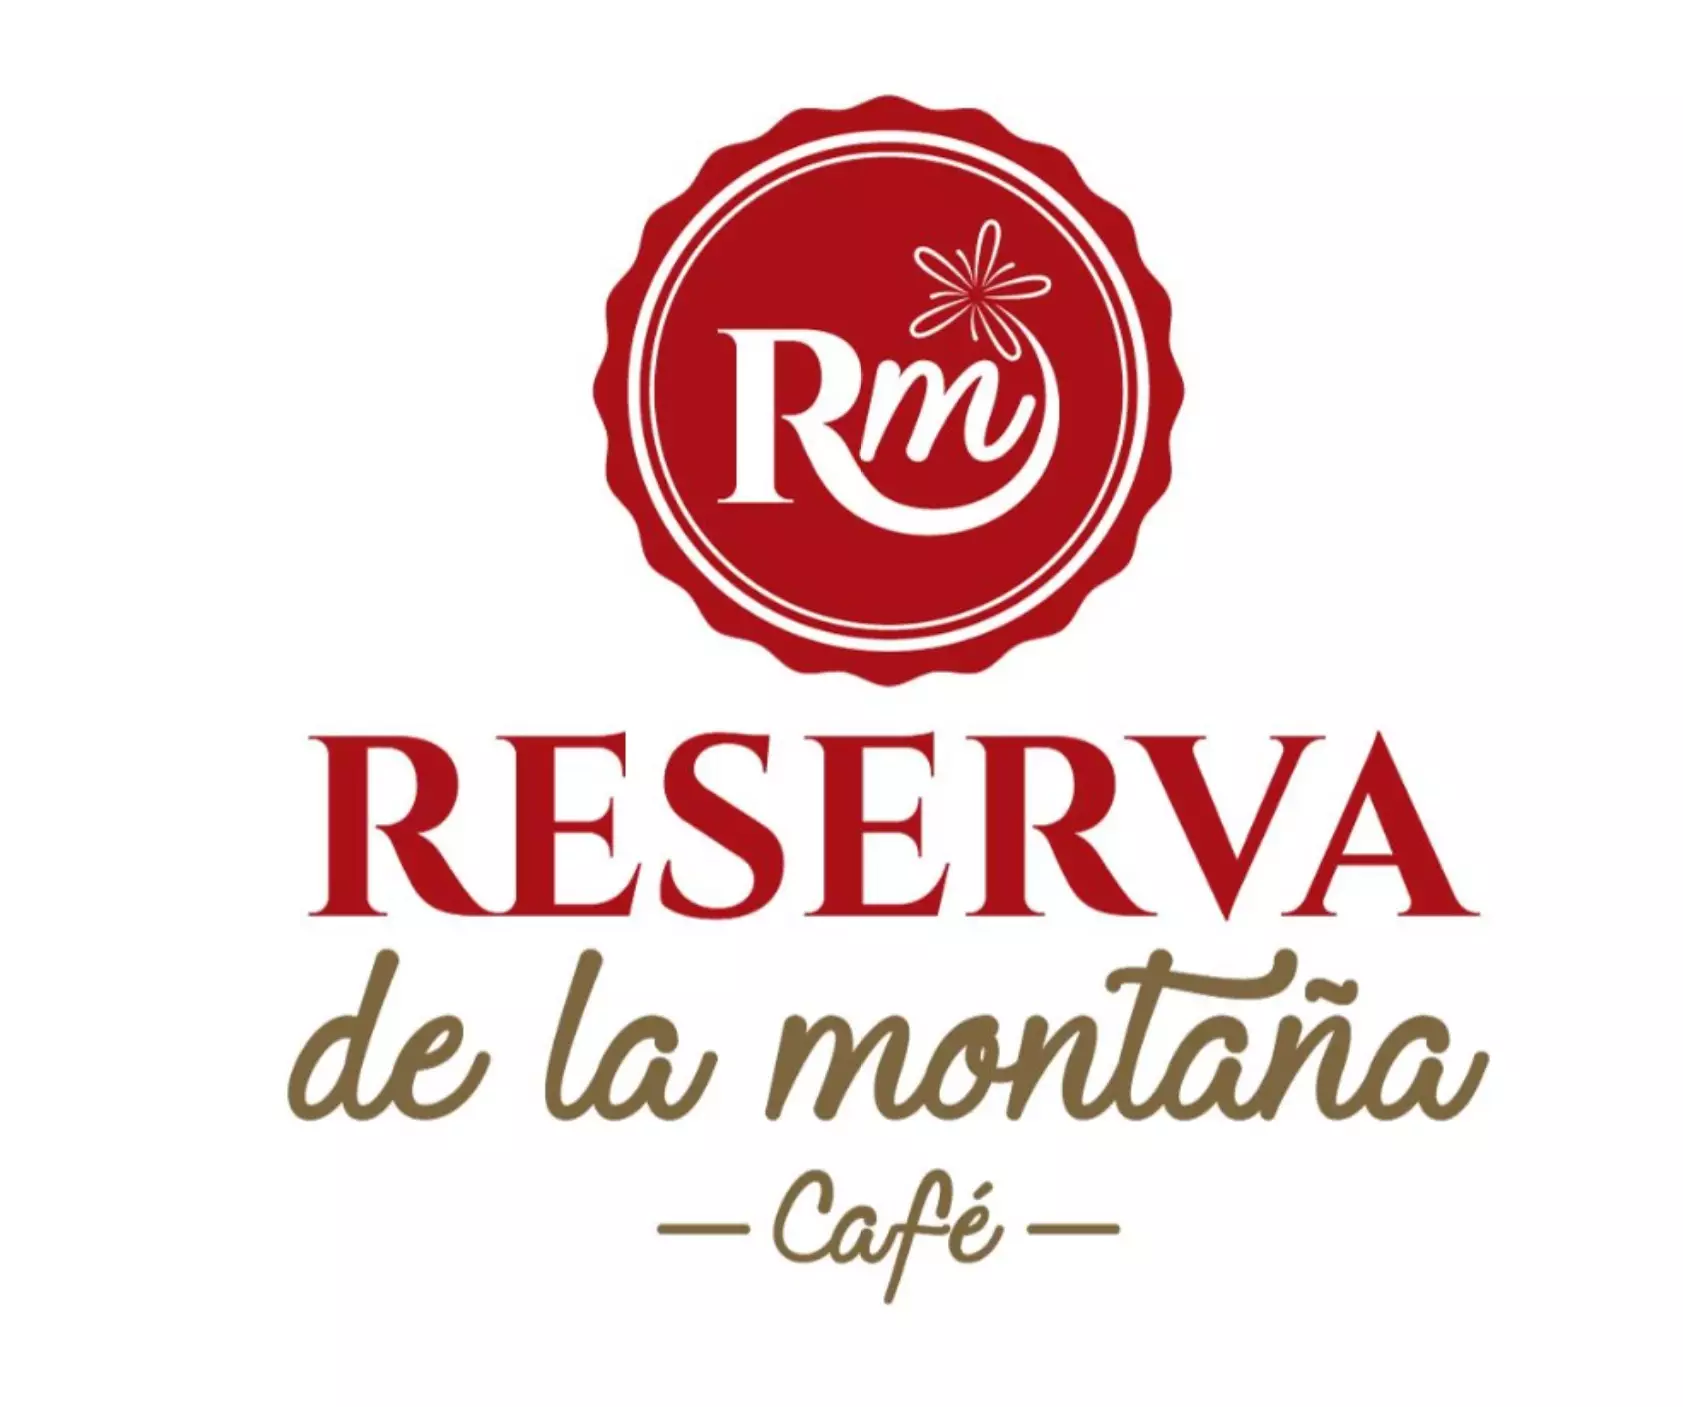 RESERVA DE LA MONTAÑA CAFÉ